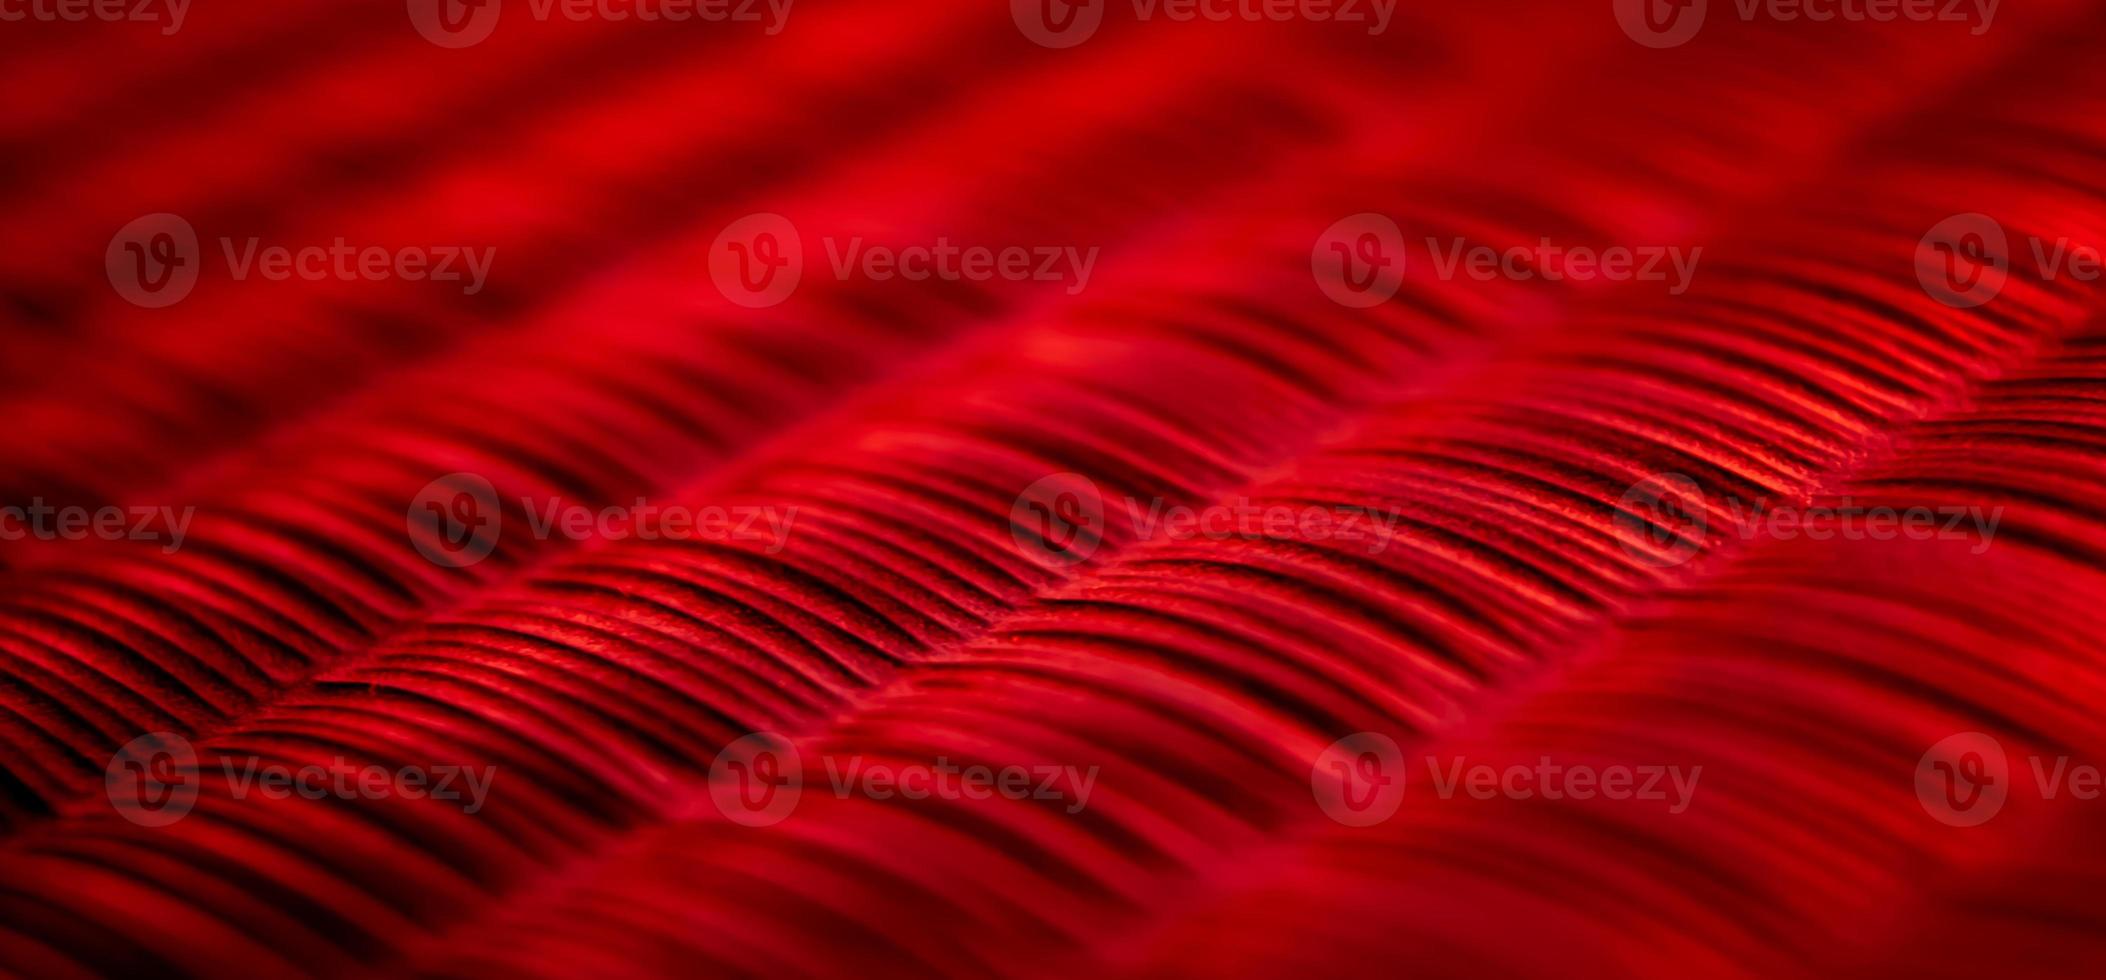 textura de luz de fundo vermelho abstrato foto